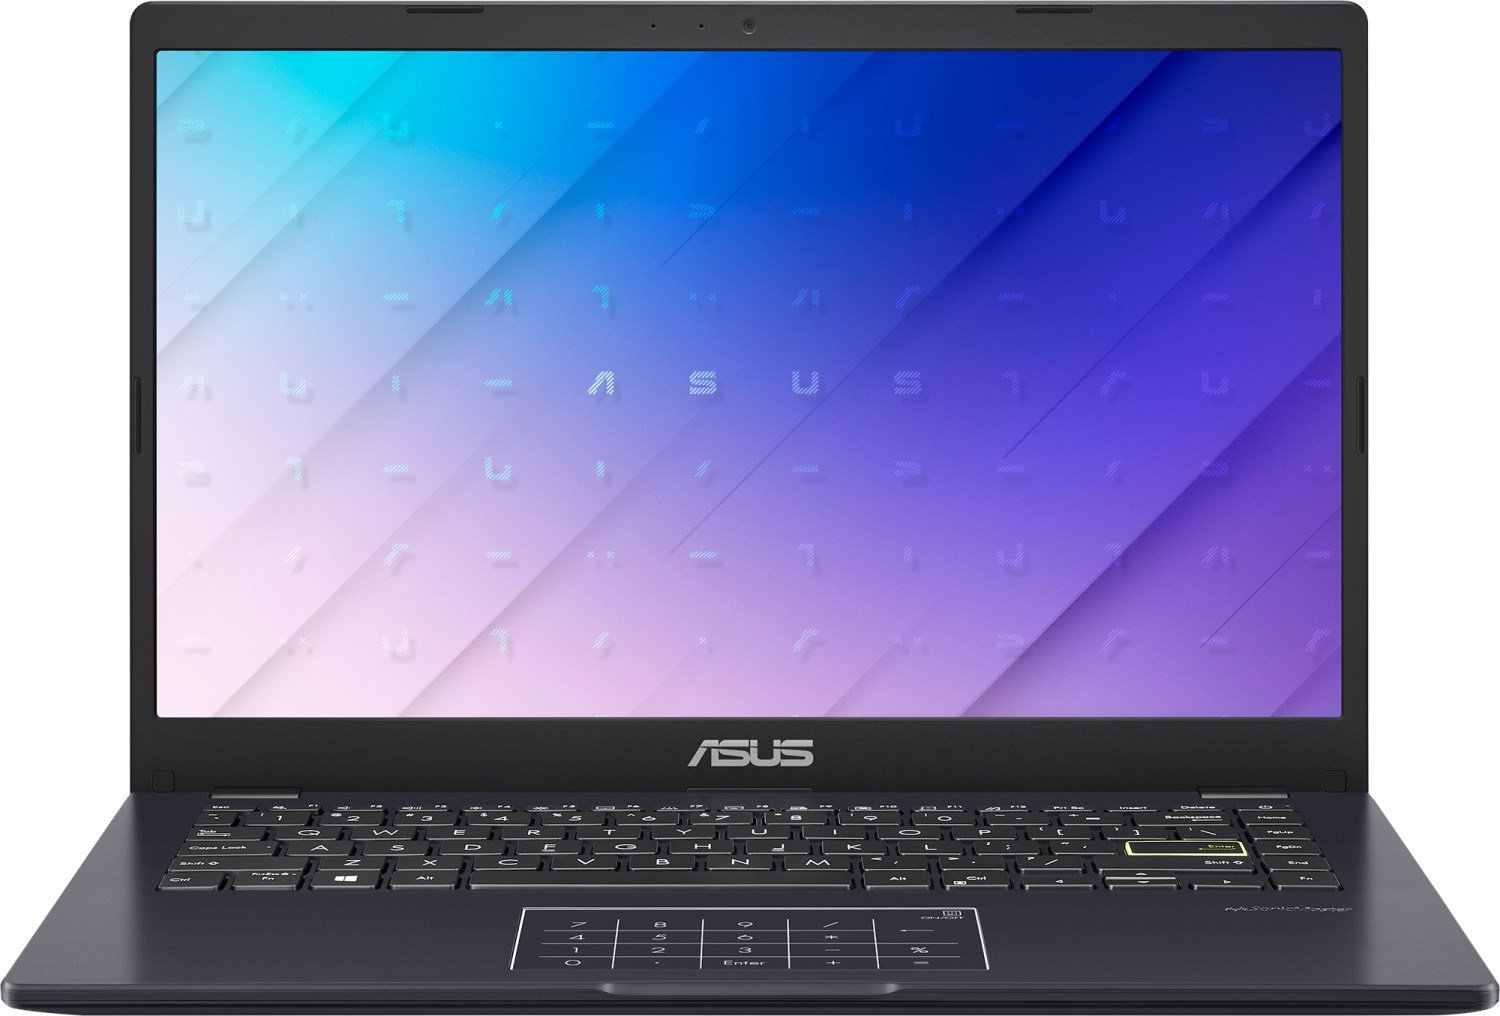 ASUS E410MA-BV1517, Intel Celeron N4020, 4GB DDR4 2666, 256GB M.2 NVMe PCIe 3.0 SSD, No OS, 14" HD, No ODD - Vertexhub Shop-Asus